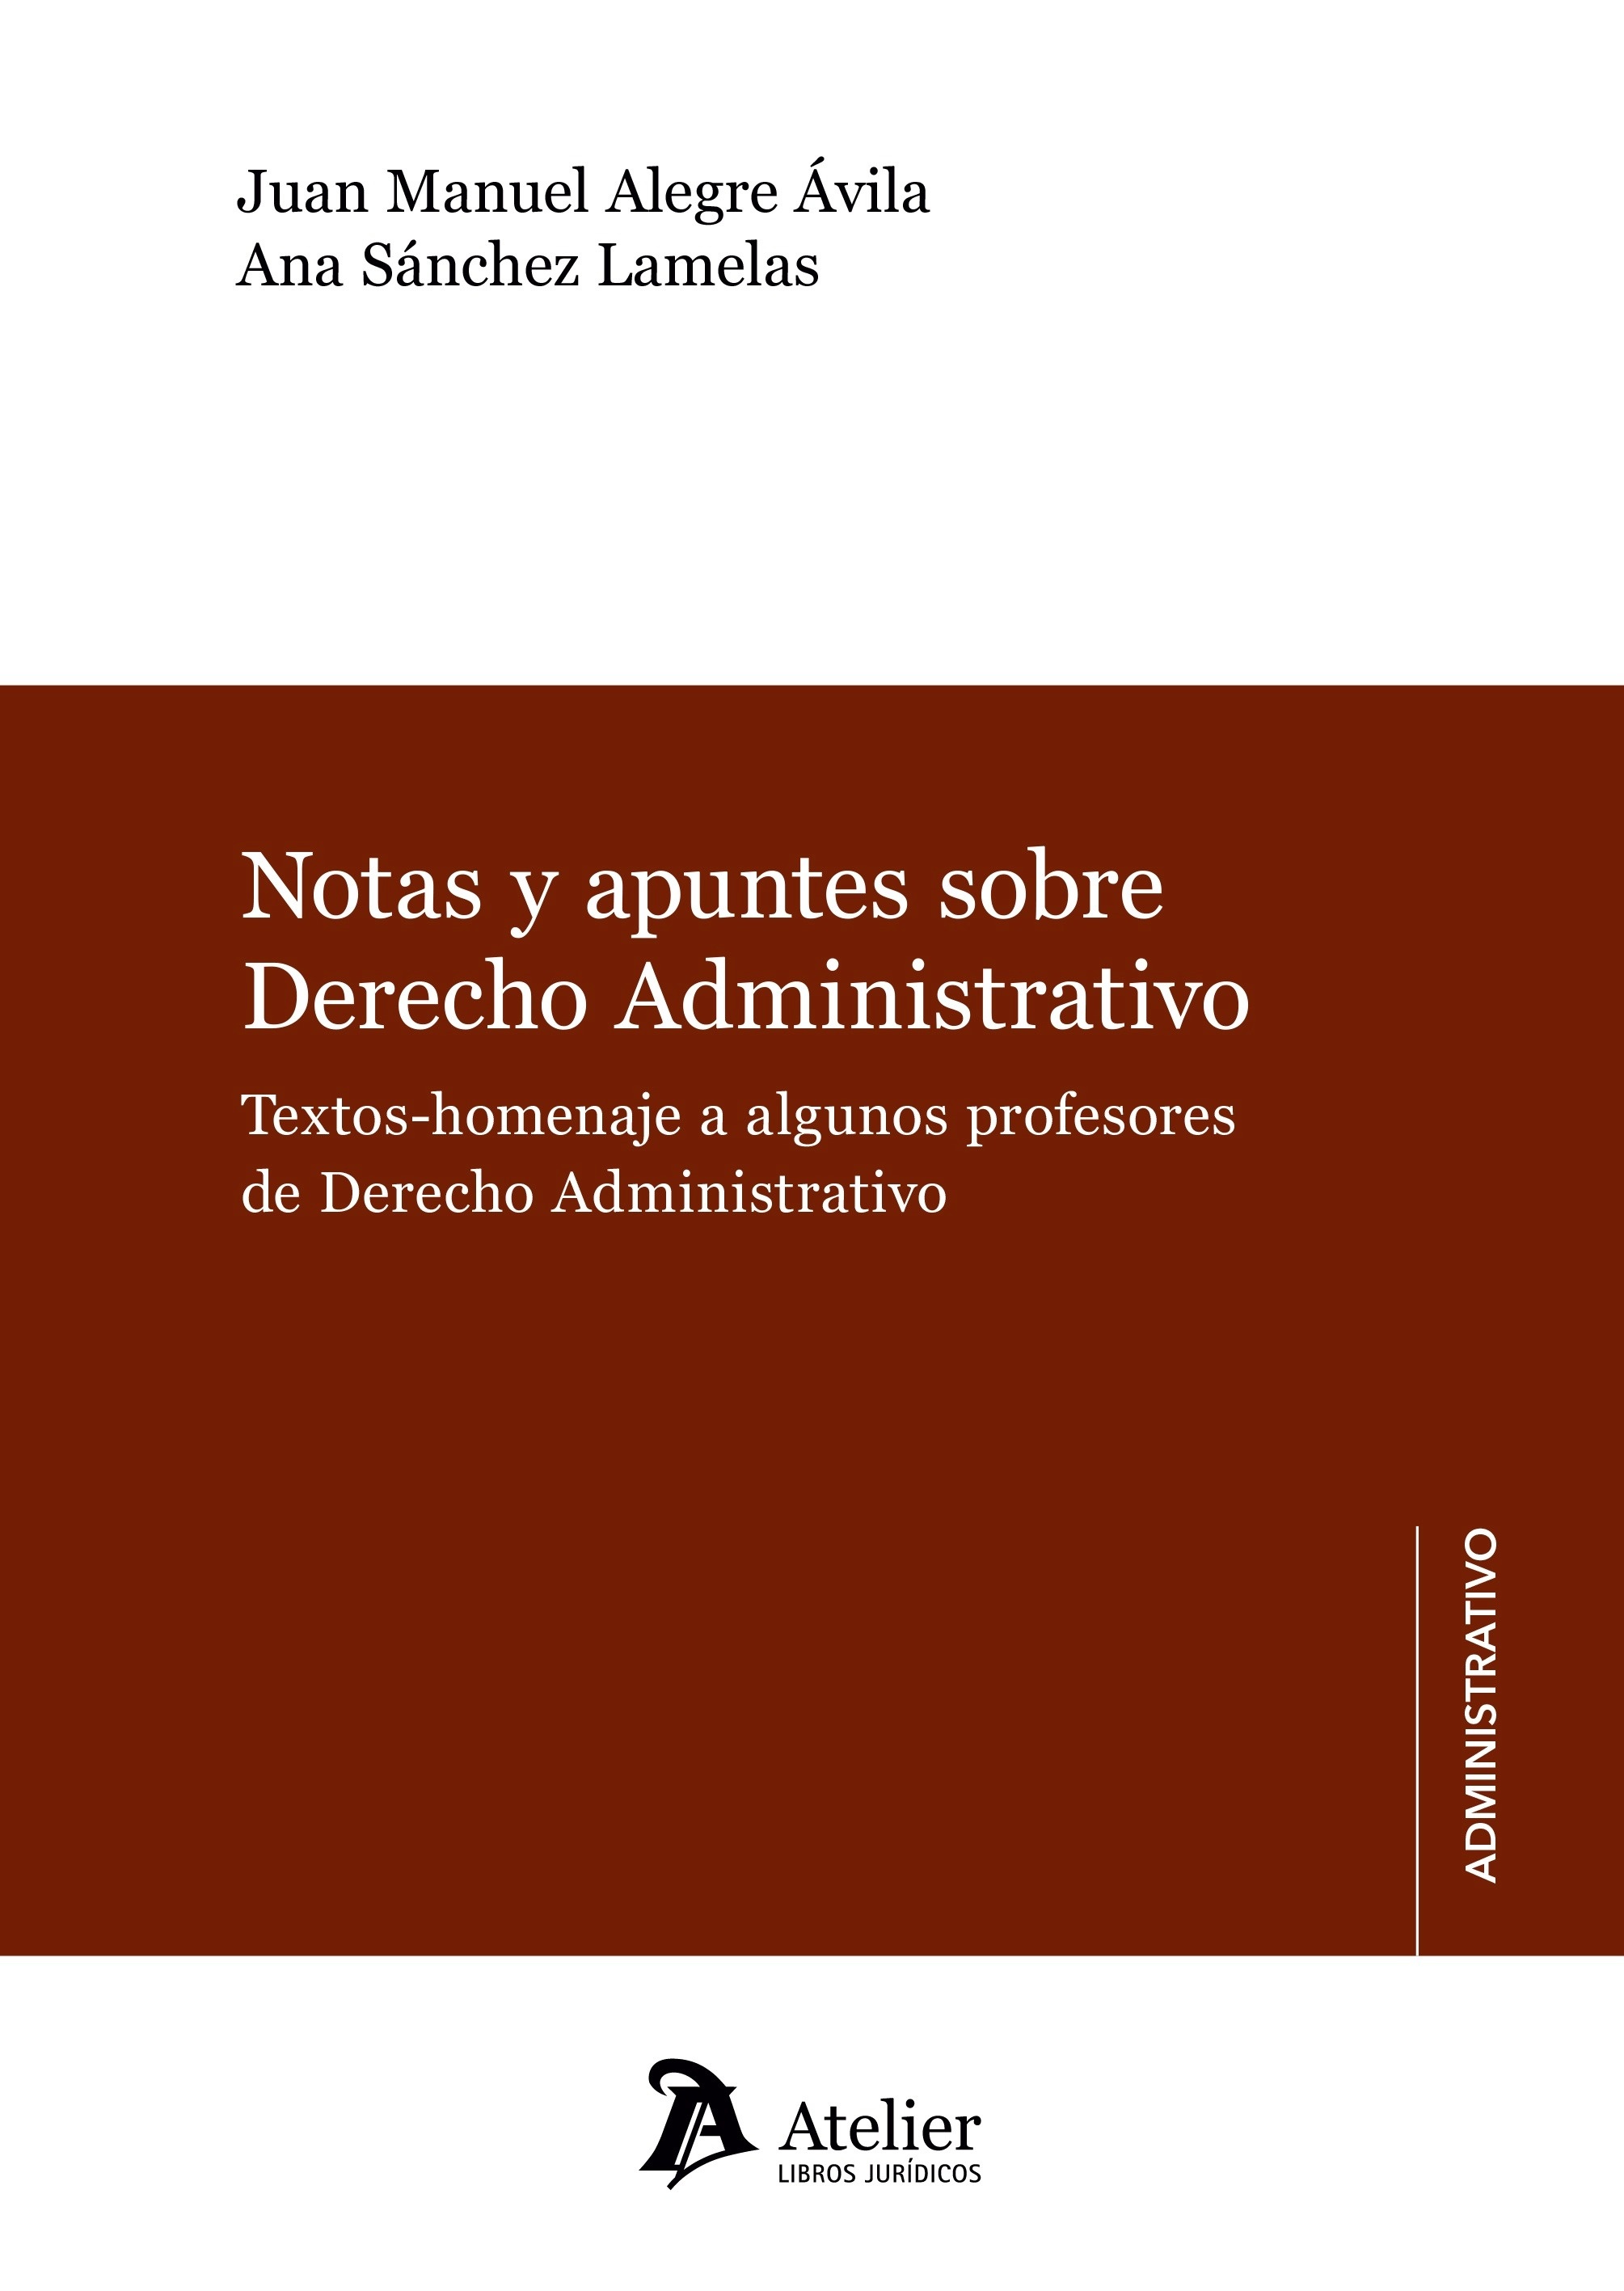 Notas y apuntes sobre Derecho Administrativo "Textos-homenaje a algunos profesores de Derecho Administrativo"